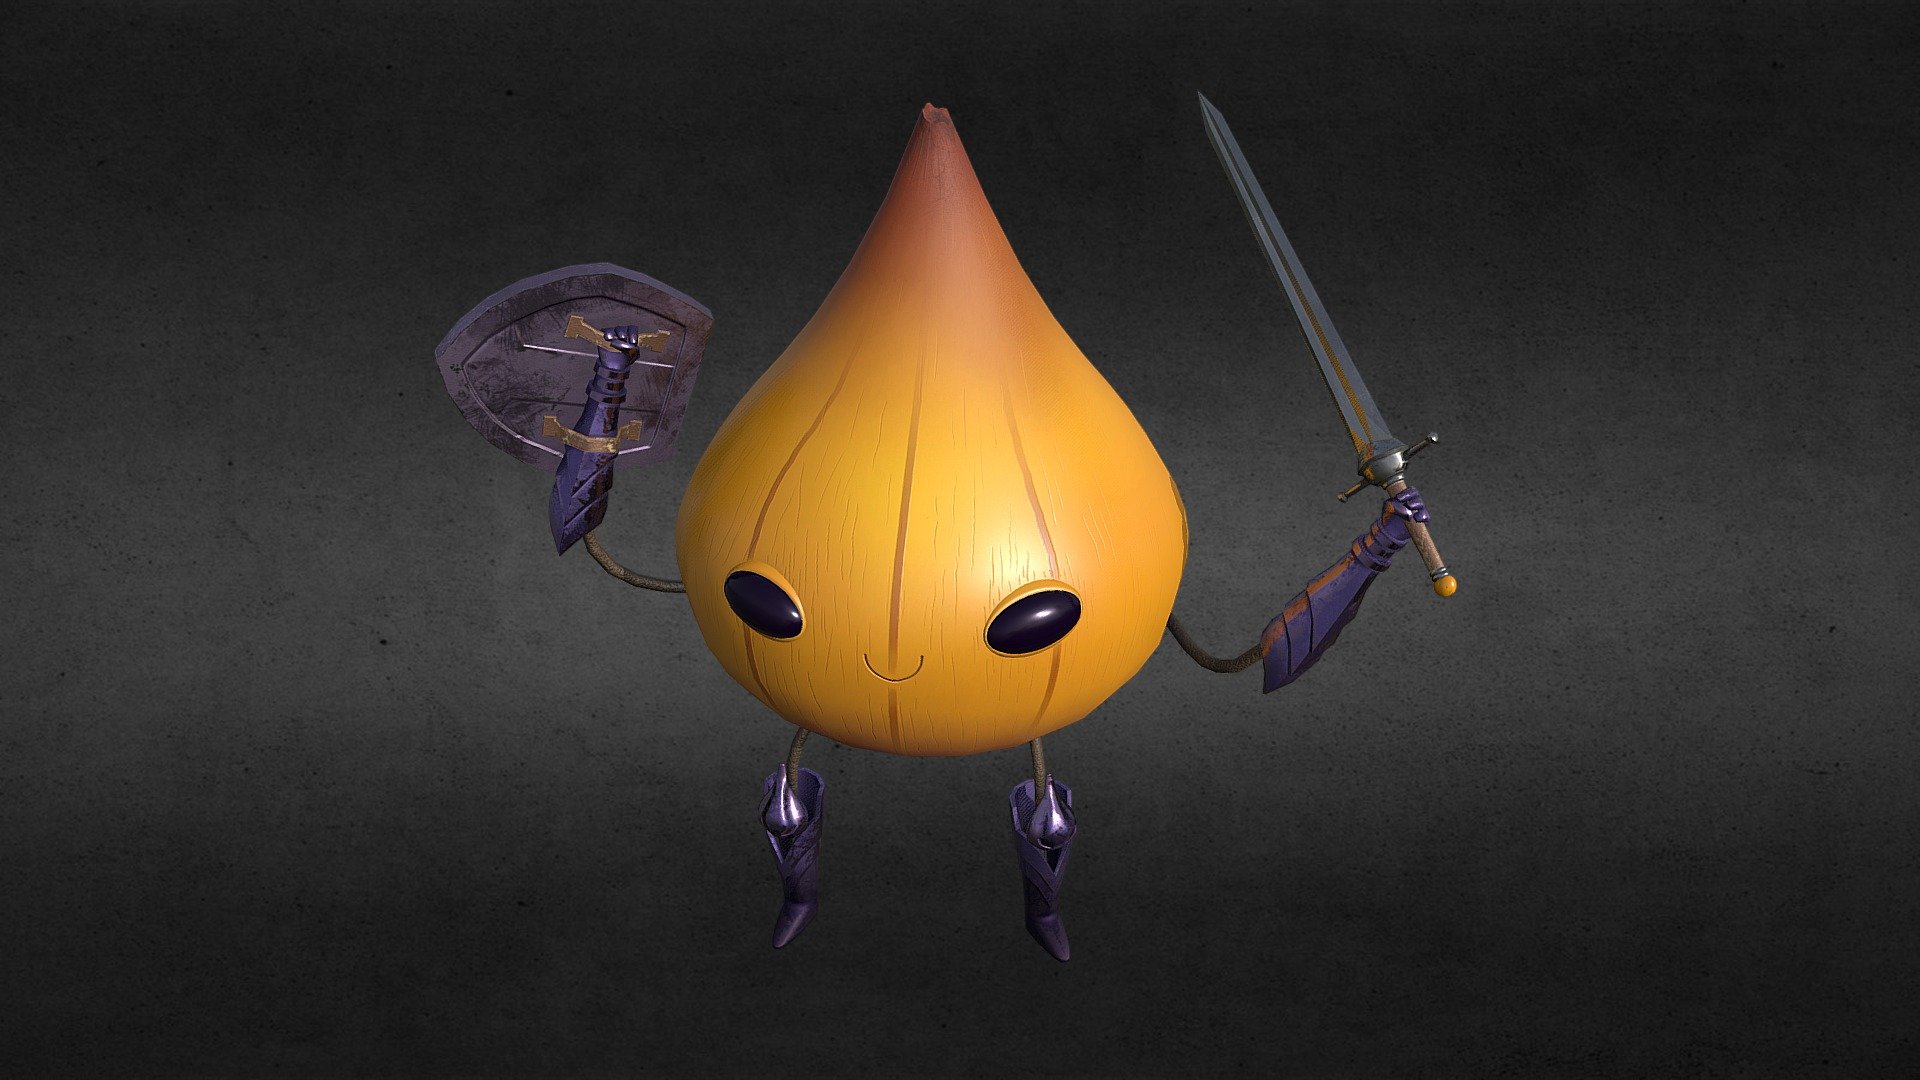 There will be tears - Onion Knight - 3D model by Jonny Shields (@jonnyshields) 3d model